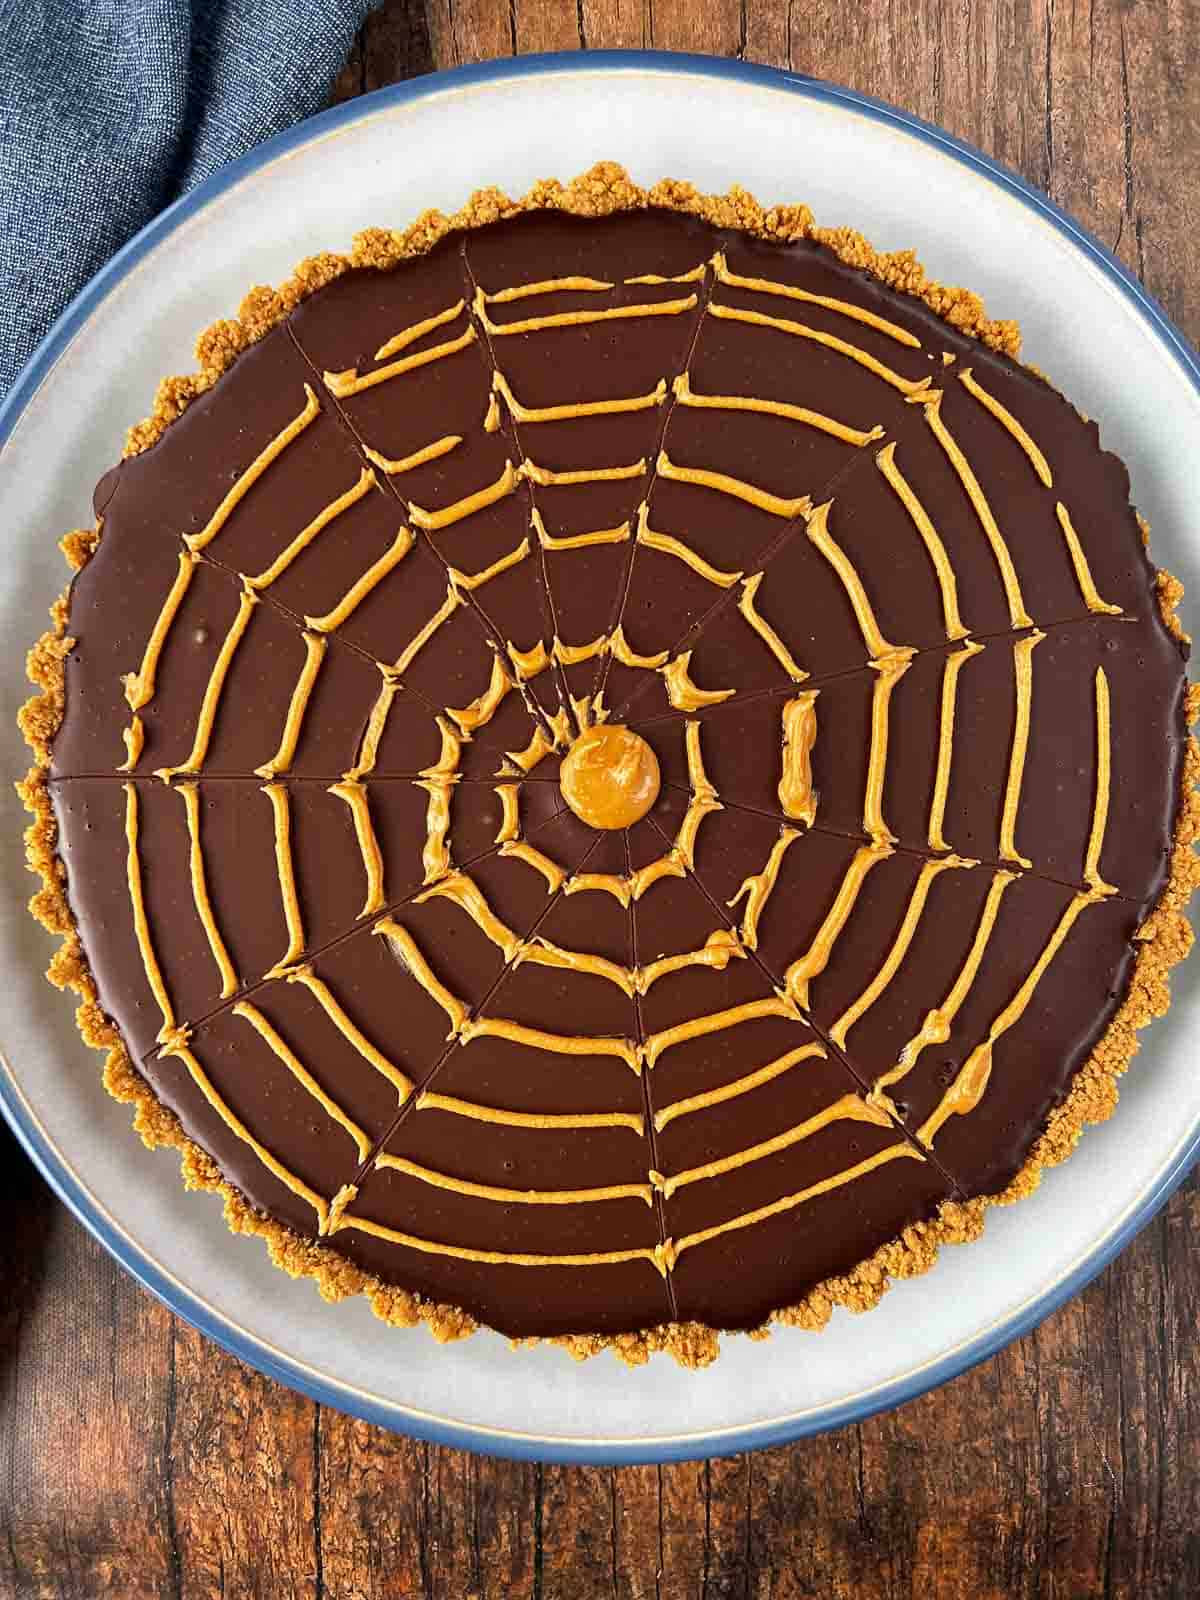 Peanut butter spider web design on chocolate ganache pie.